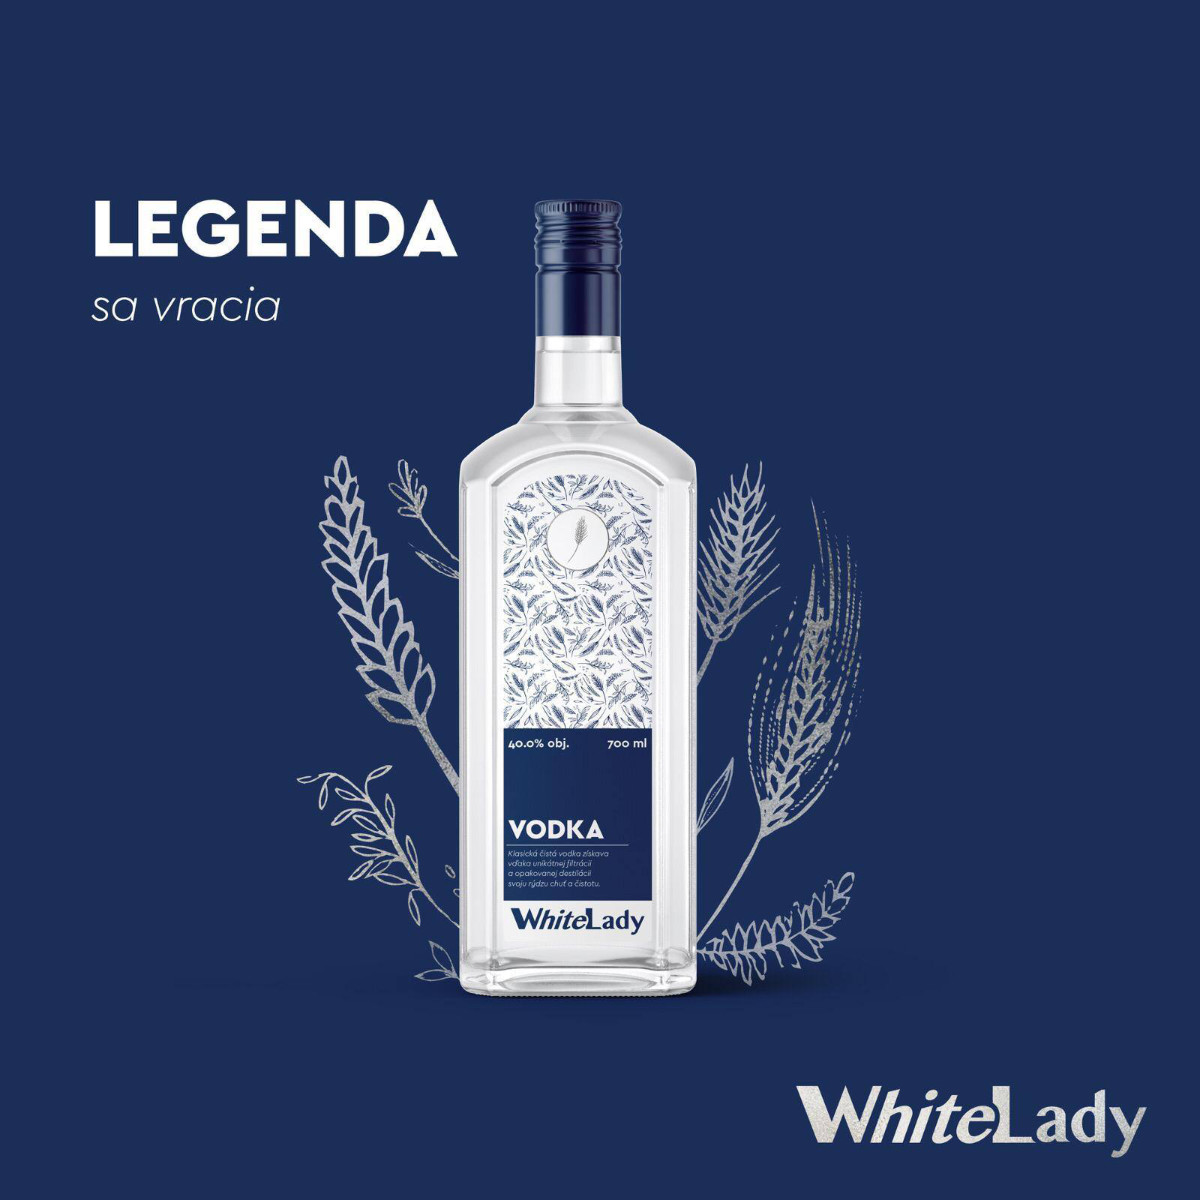 White Lady vodka